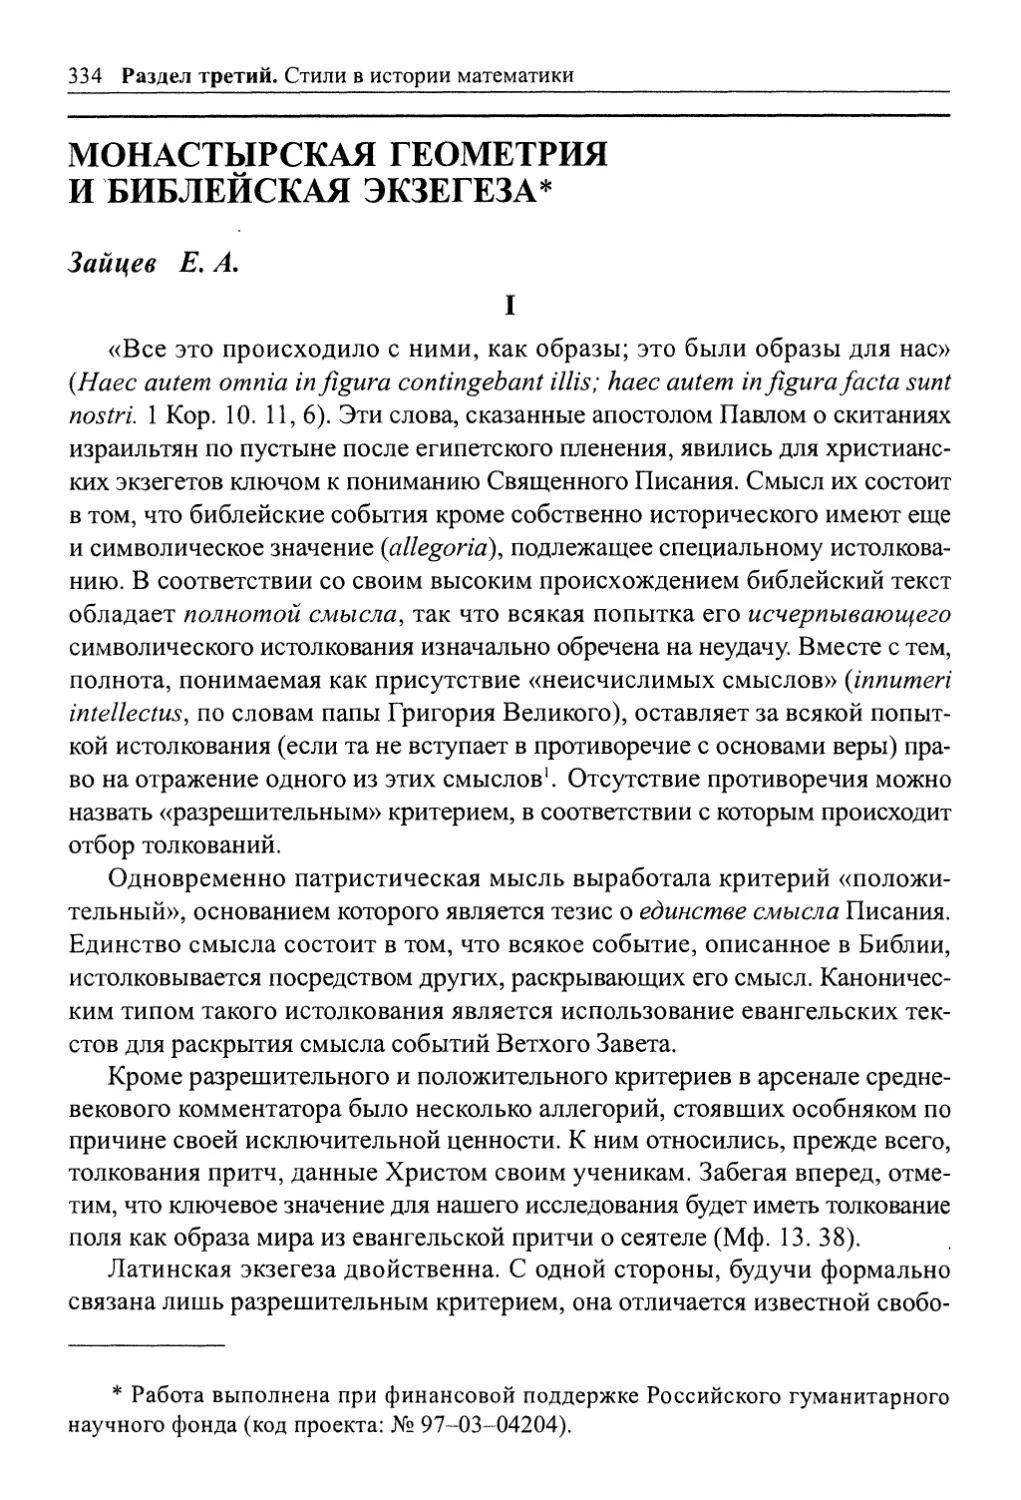 Зайцев Е. А. Монастырская геометрия и библейская экзегеза